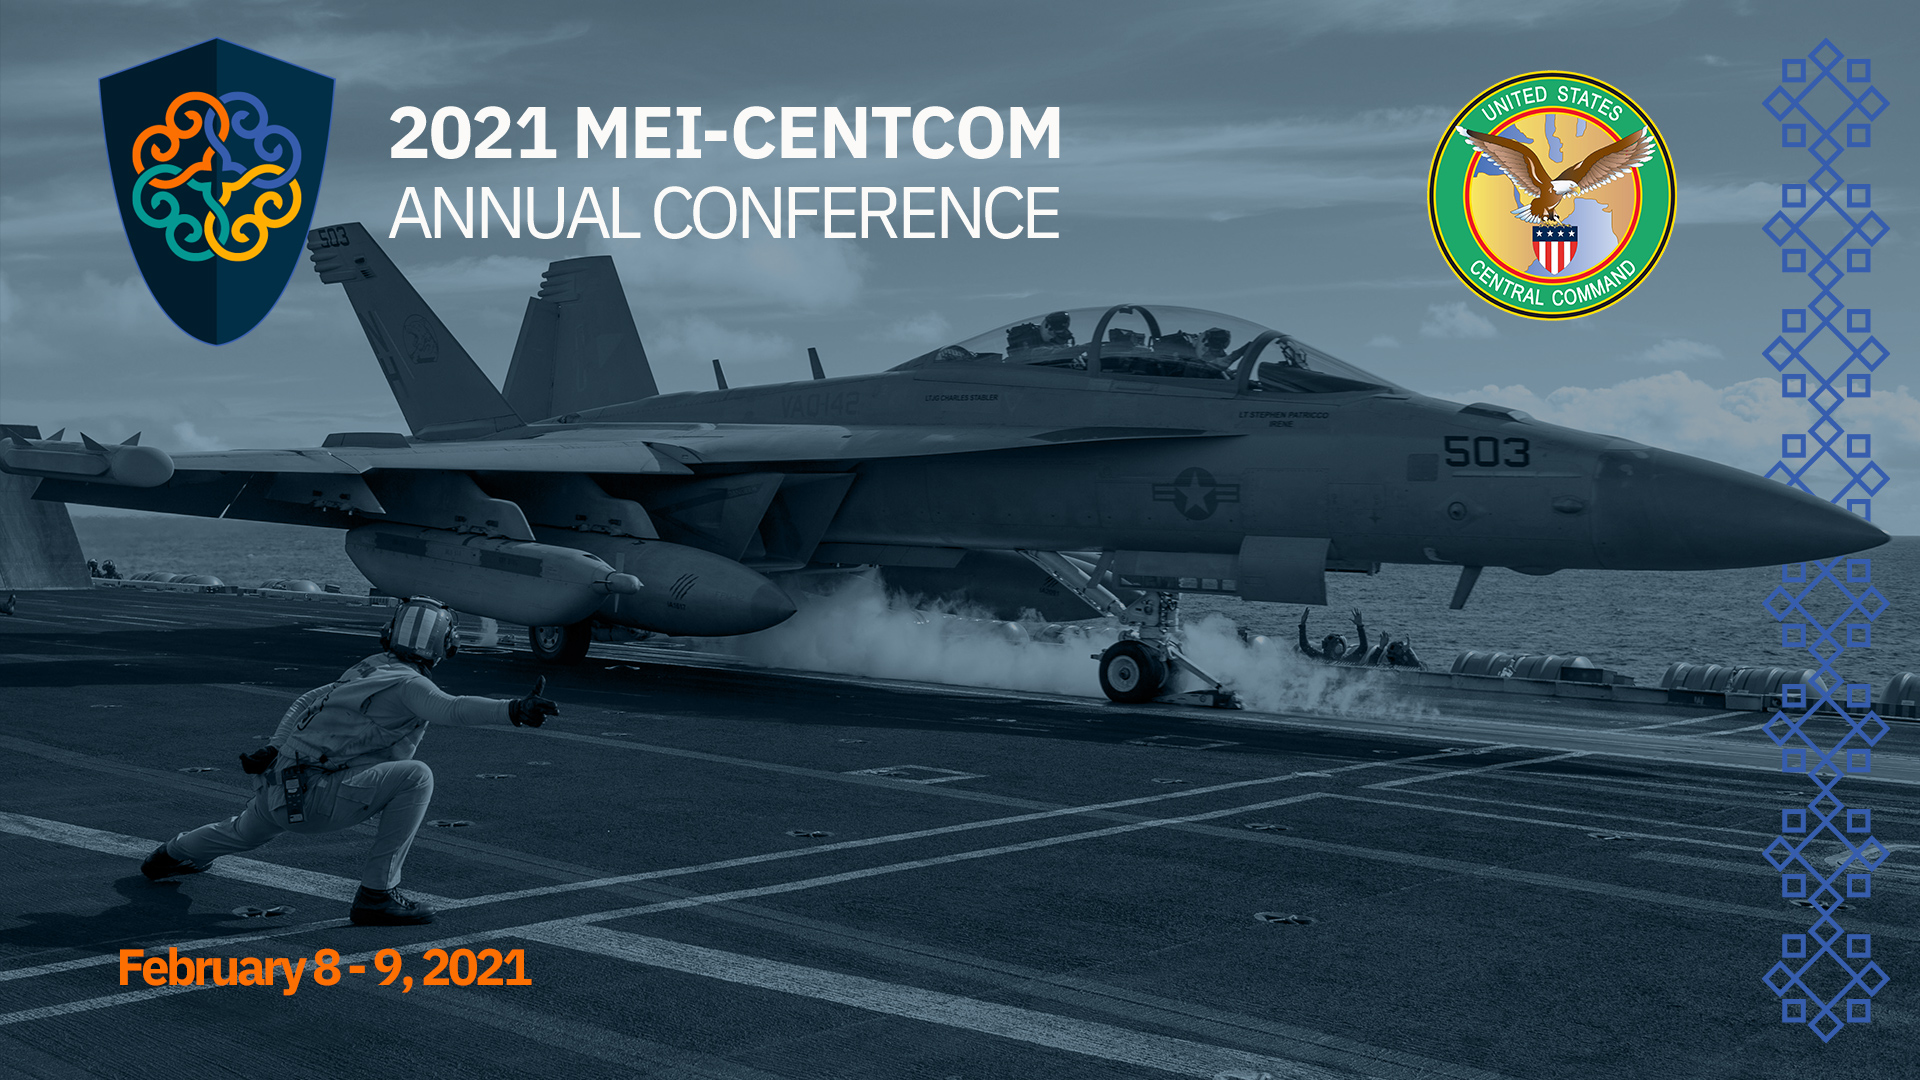 MEI-CENTCOM Conference